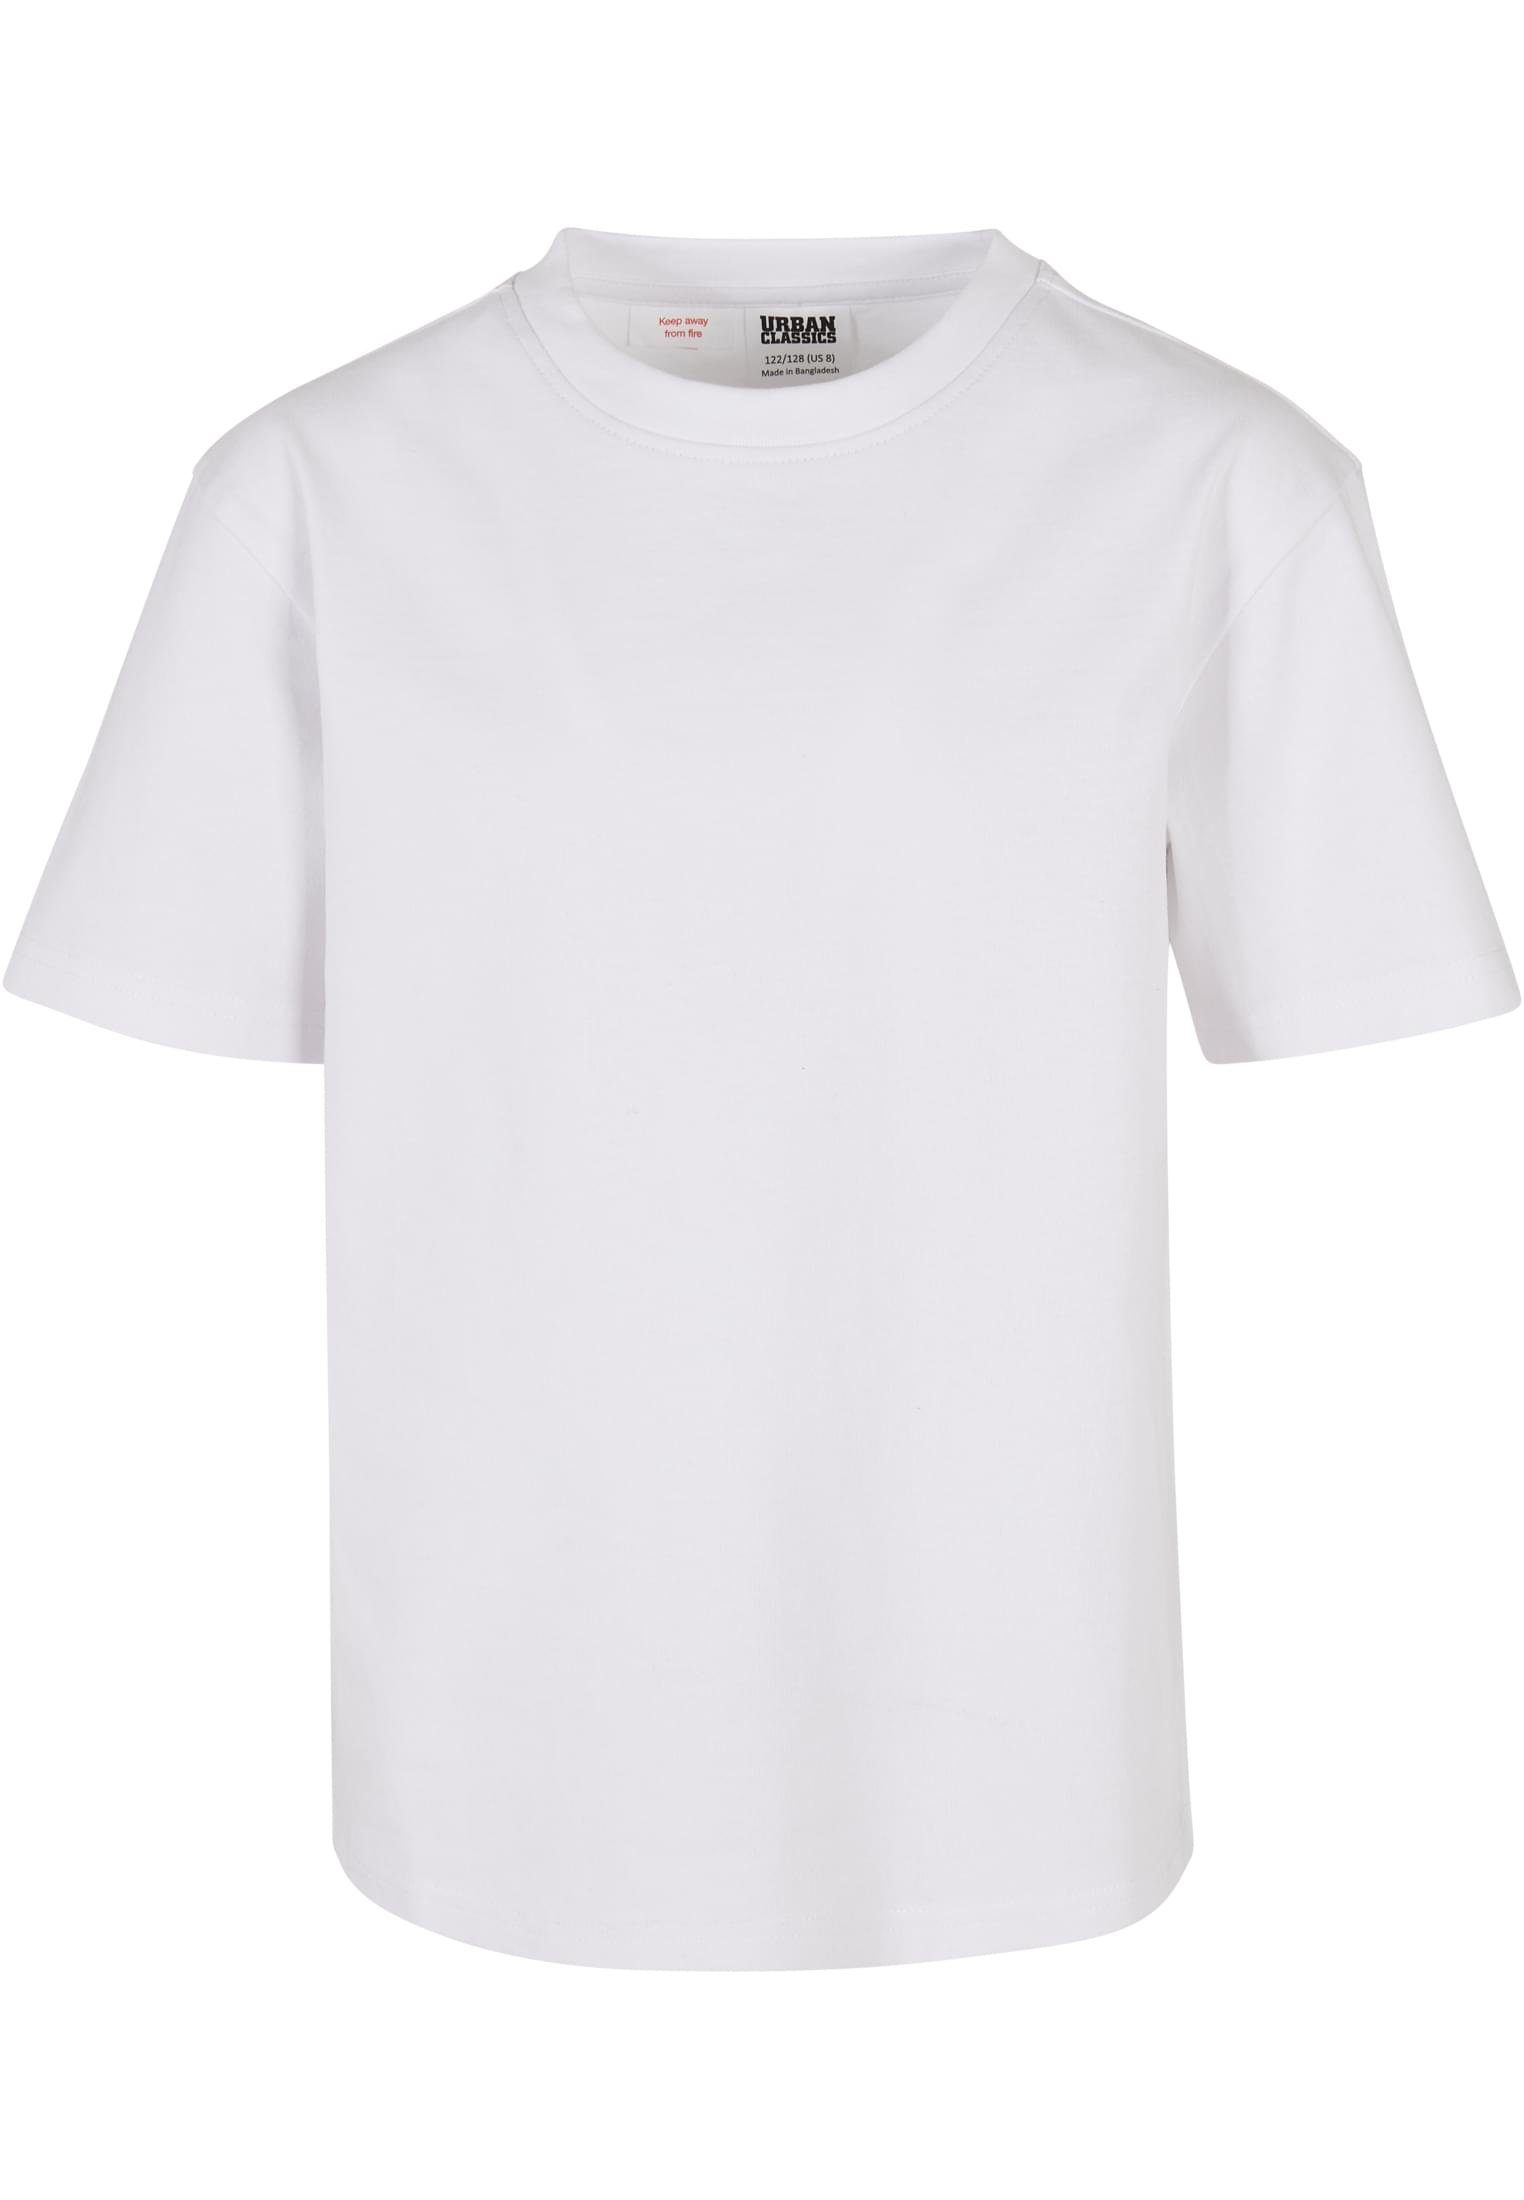 Weiße Jungen T-Shirts online kaufen | OTTO